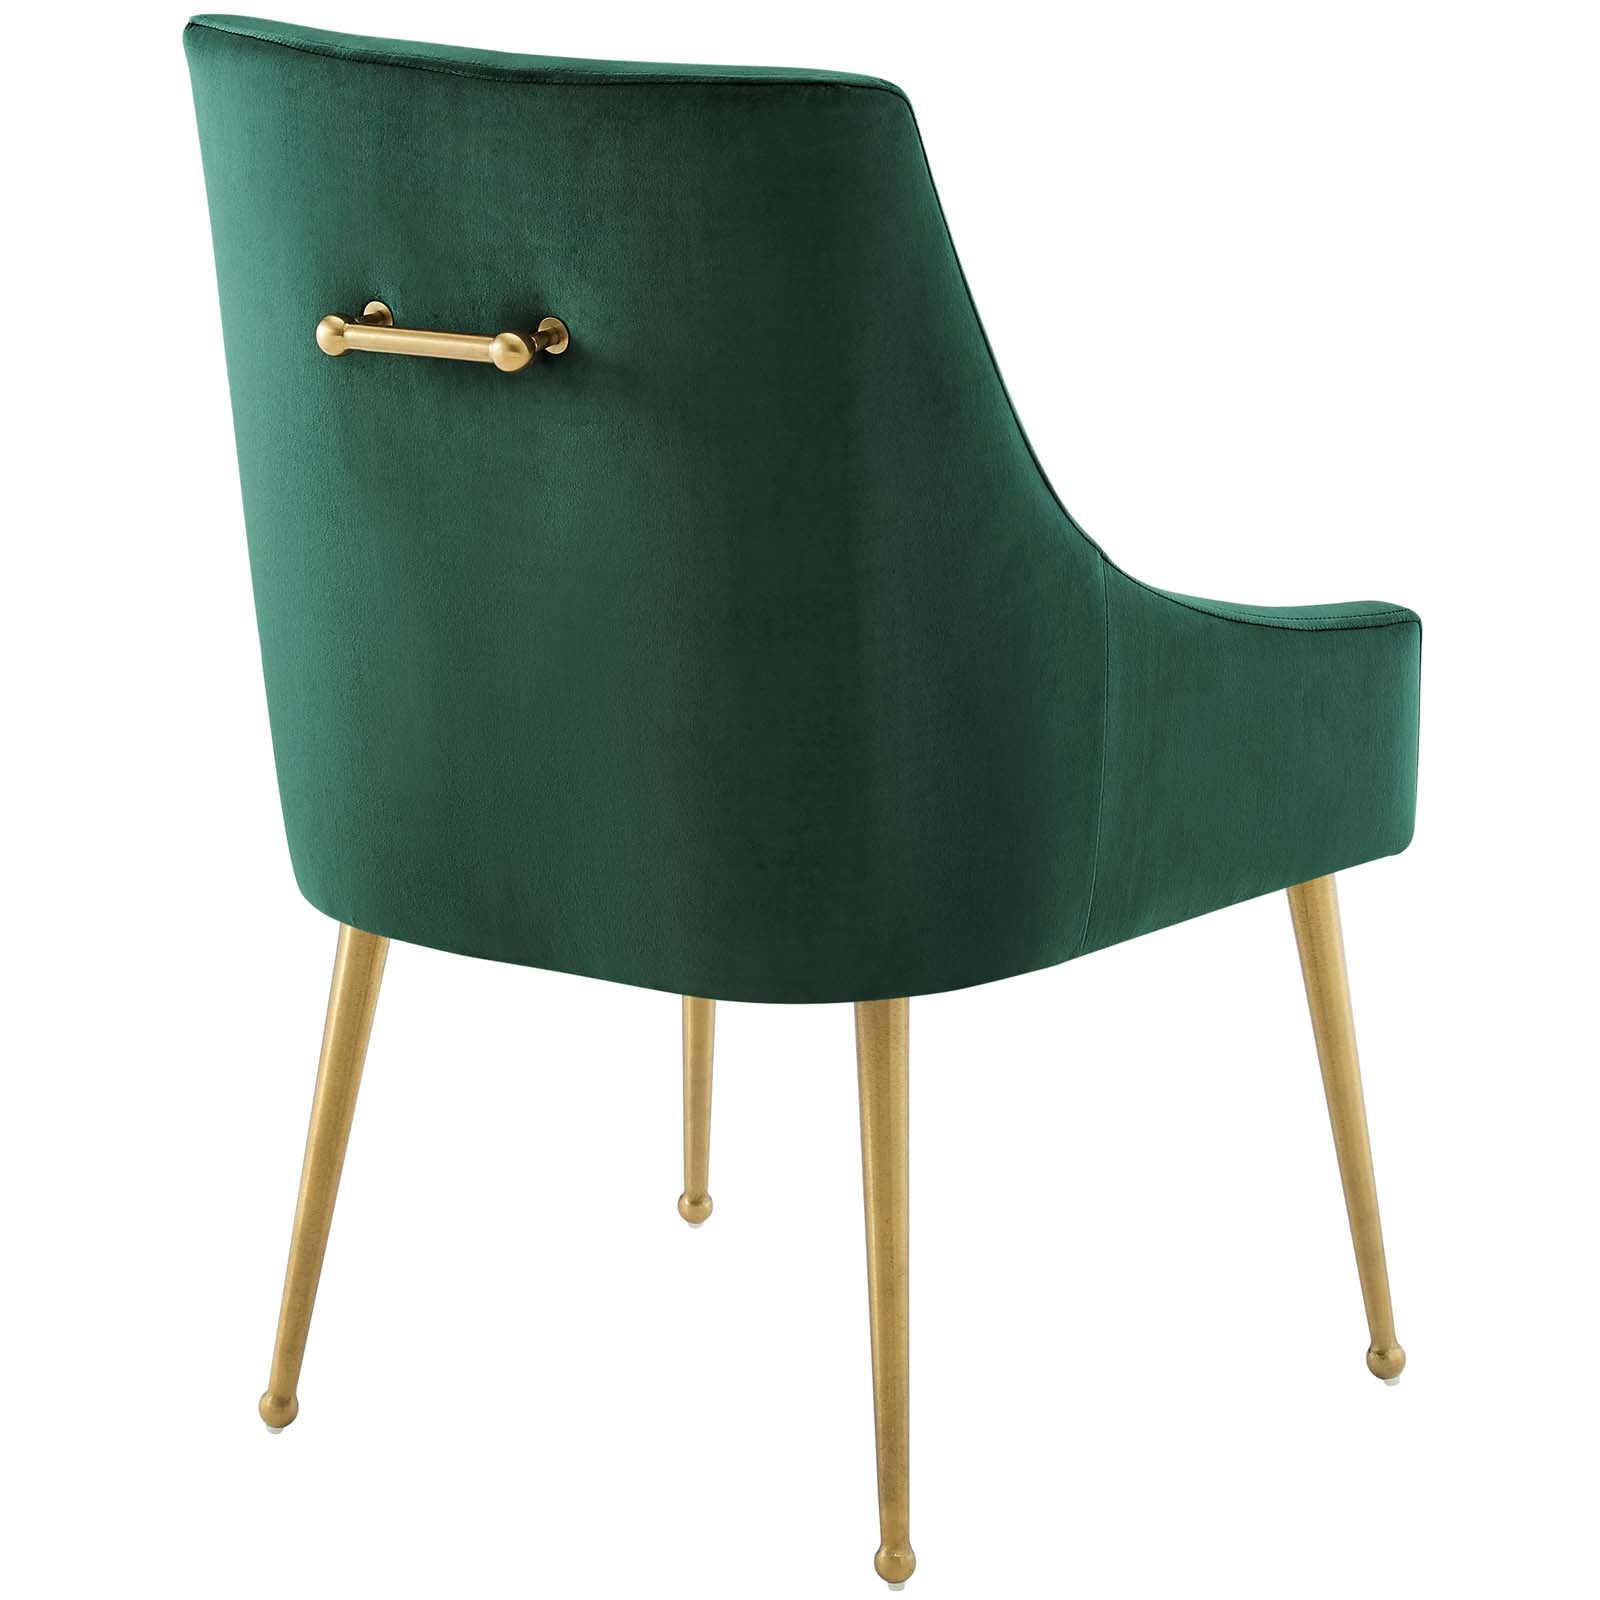 Discern Upholstered Performance Velvet Dining Chair Set of 2 - East Shore Modern Home Furnishings